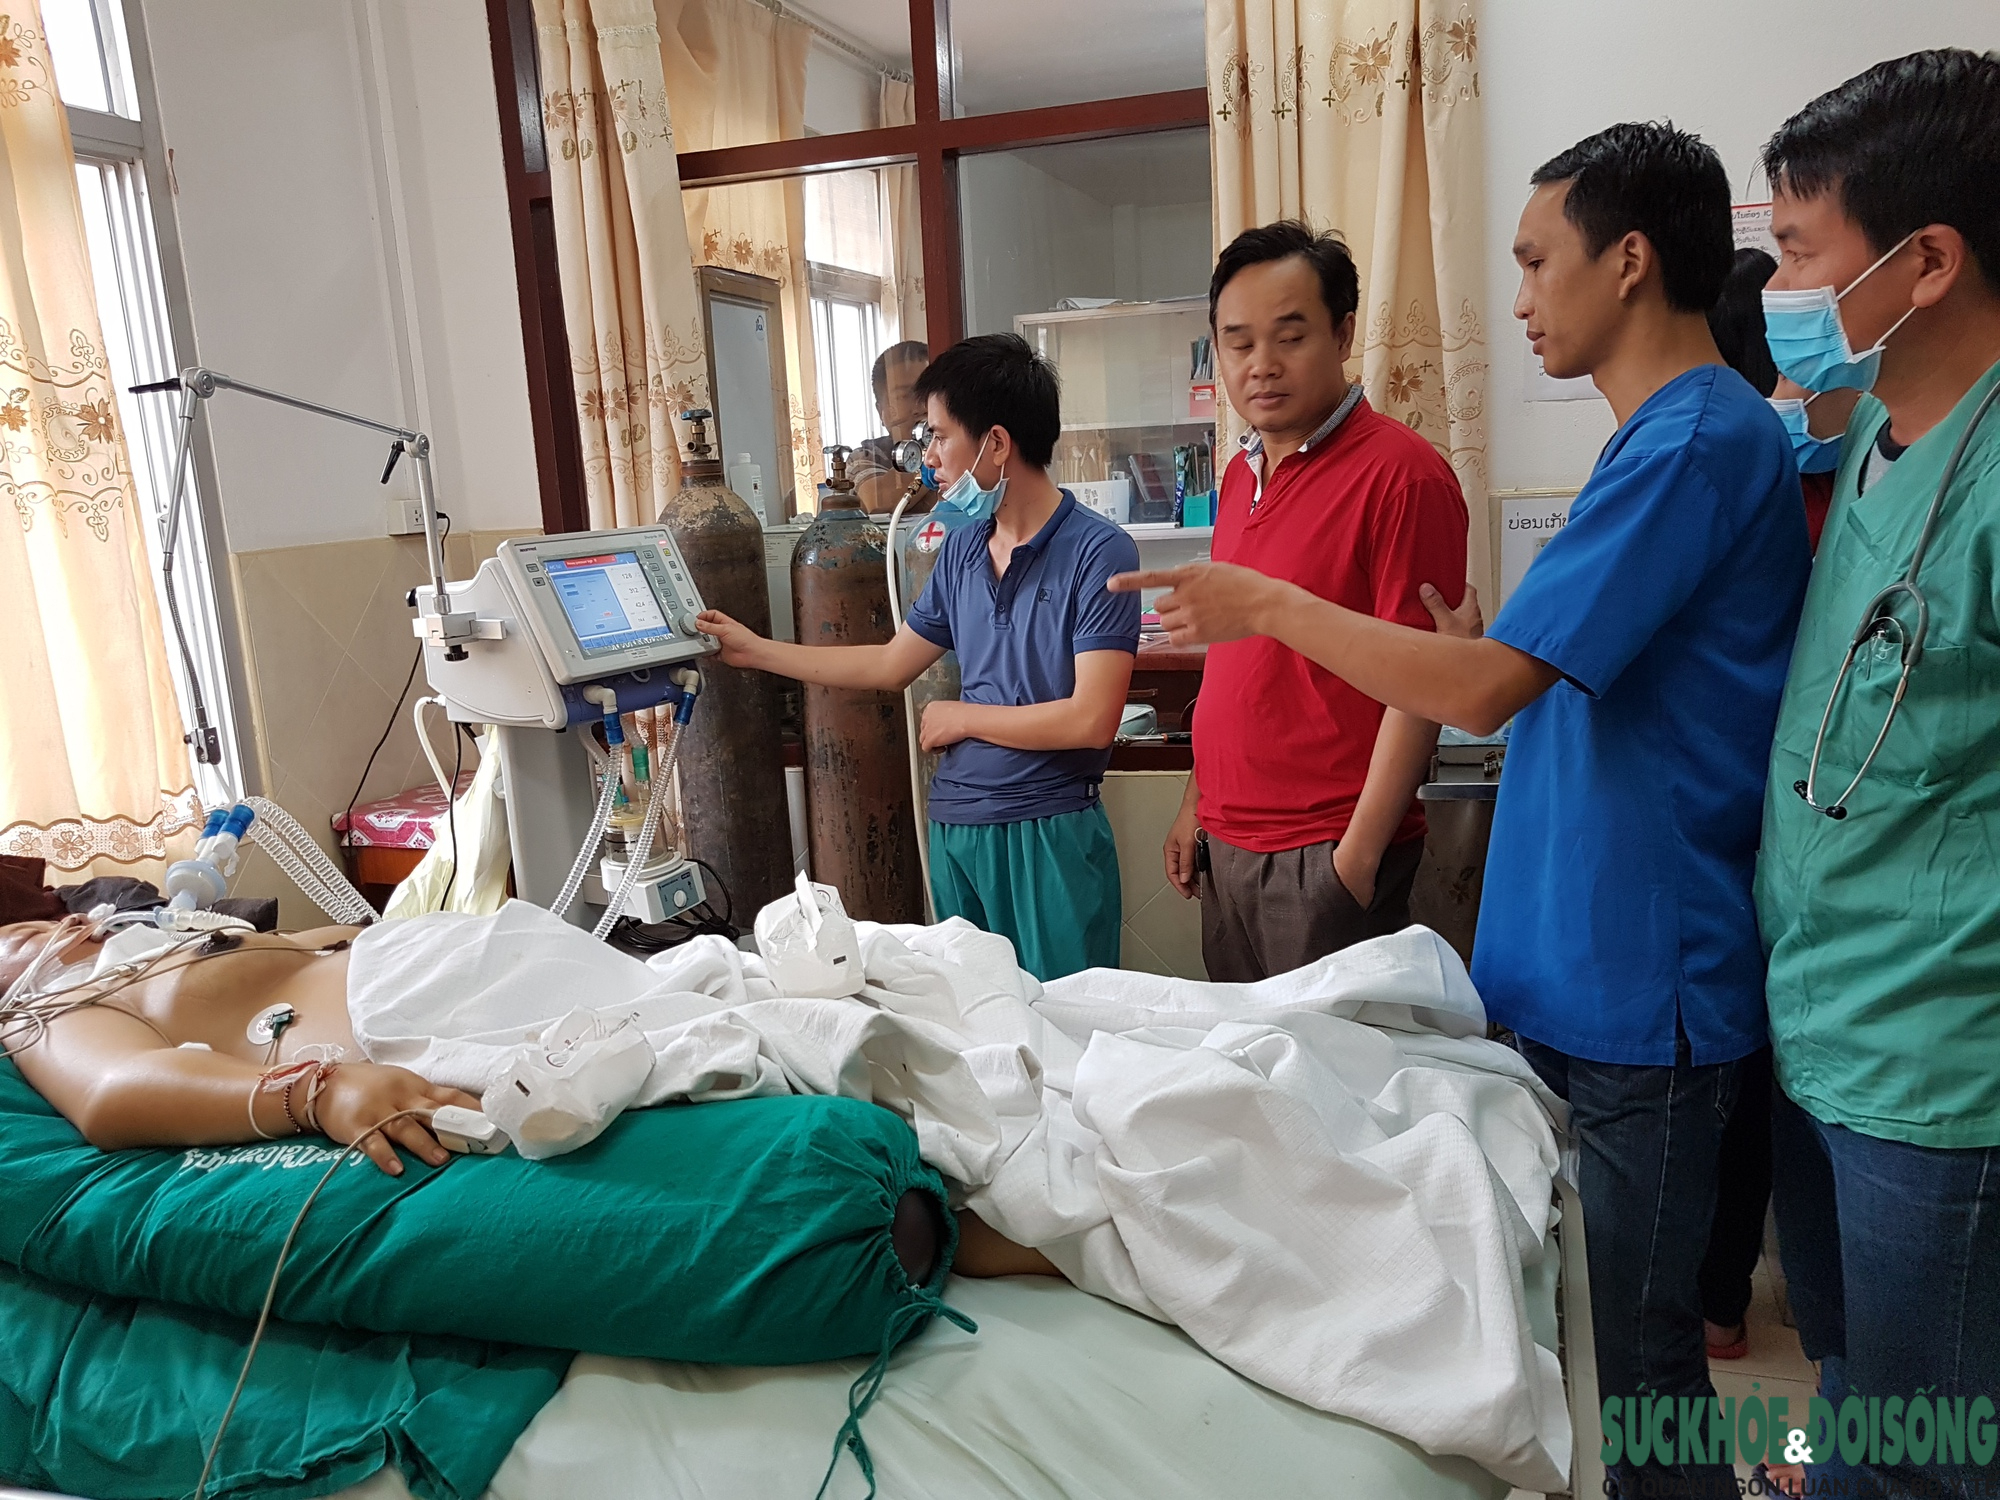 Chuyển giao kỹ thuật giúp bệnh viện nước bạn Lào phát triển  - Ảnh 5.